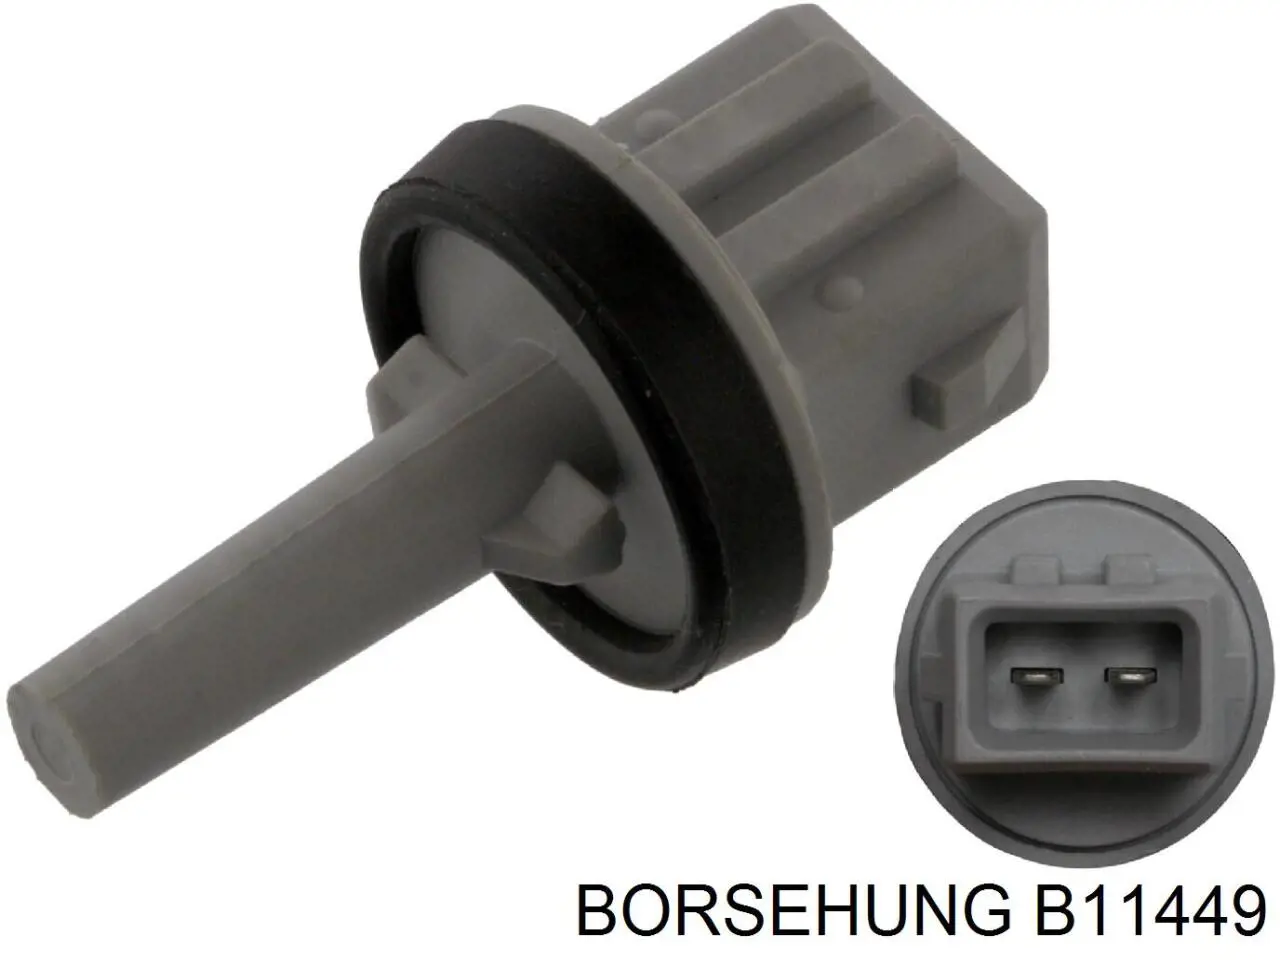 B11449 Borsehung датчик температуры воздуха в салоне